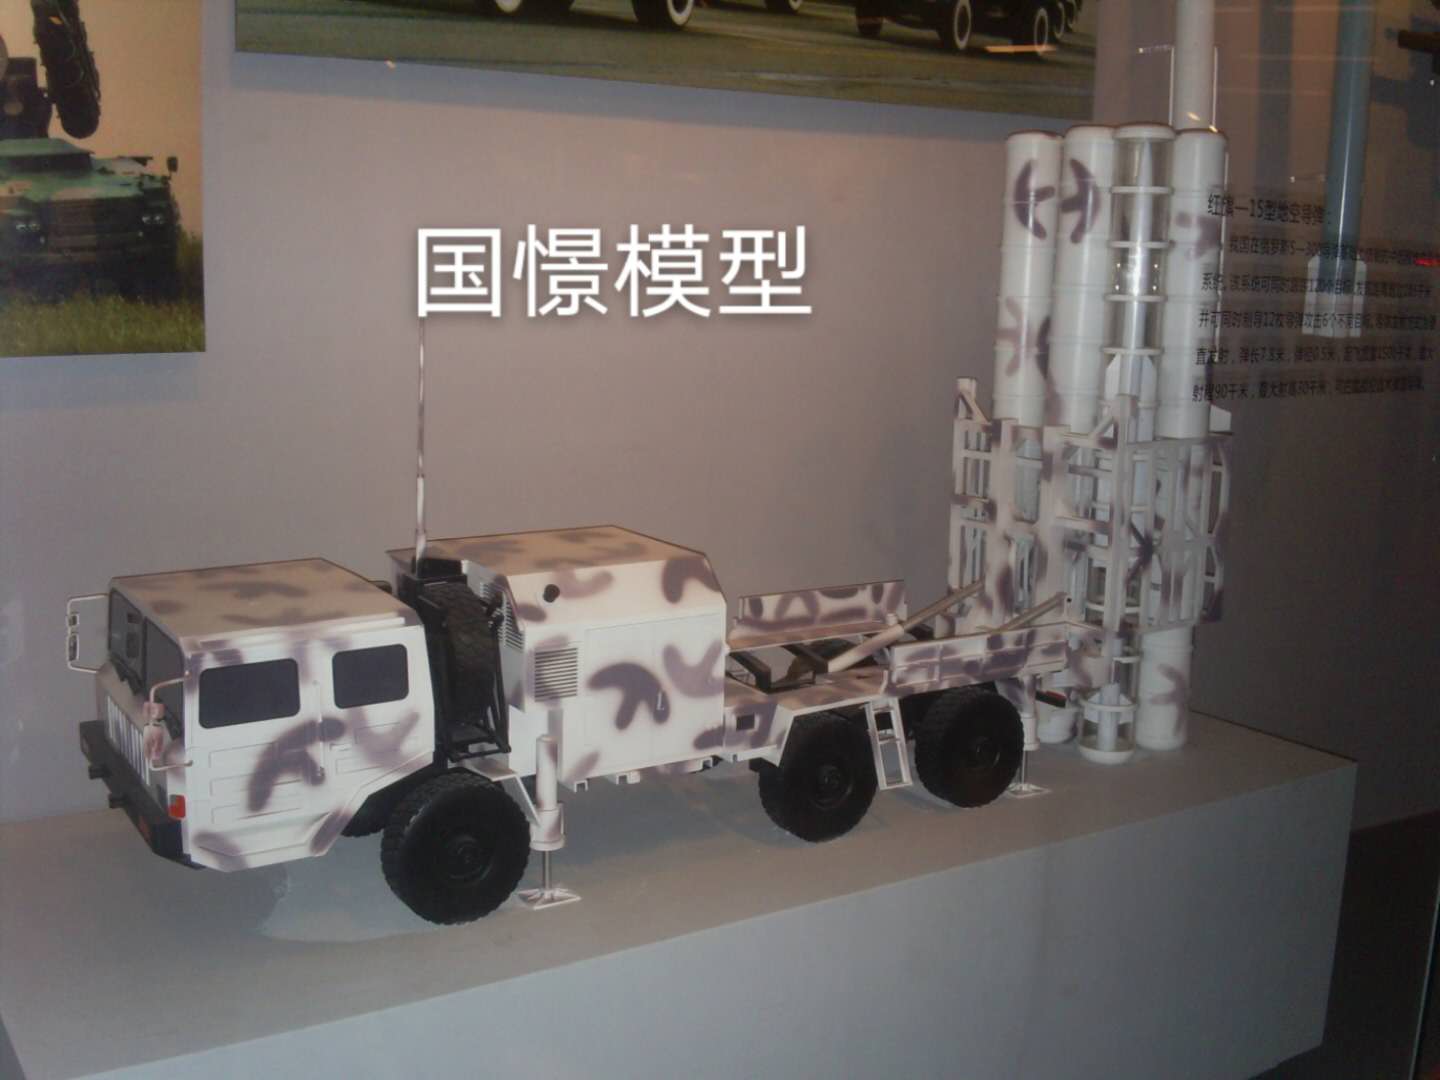 巴青县车辆模型